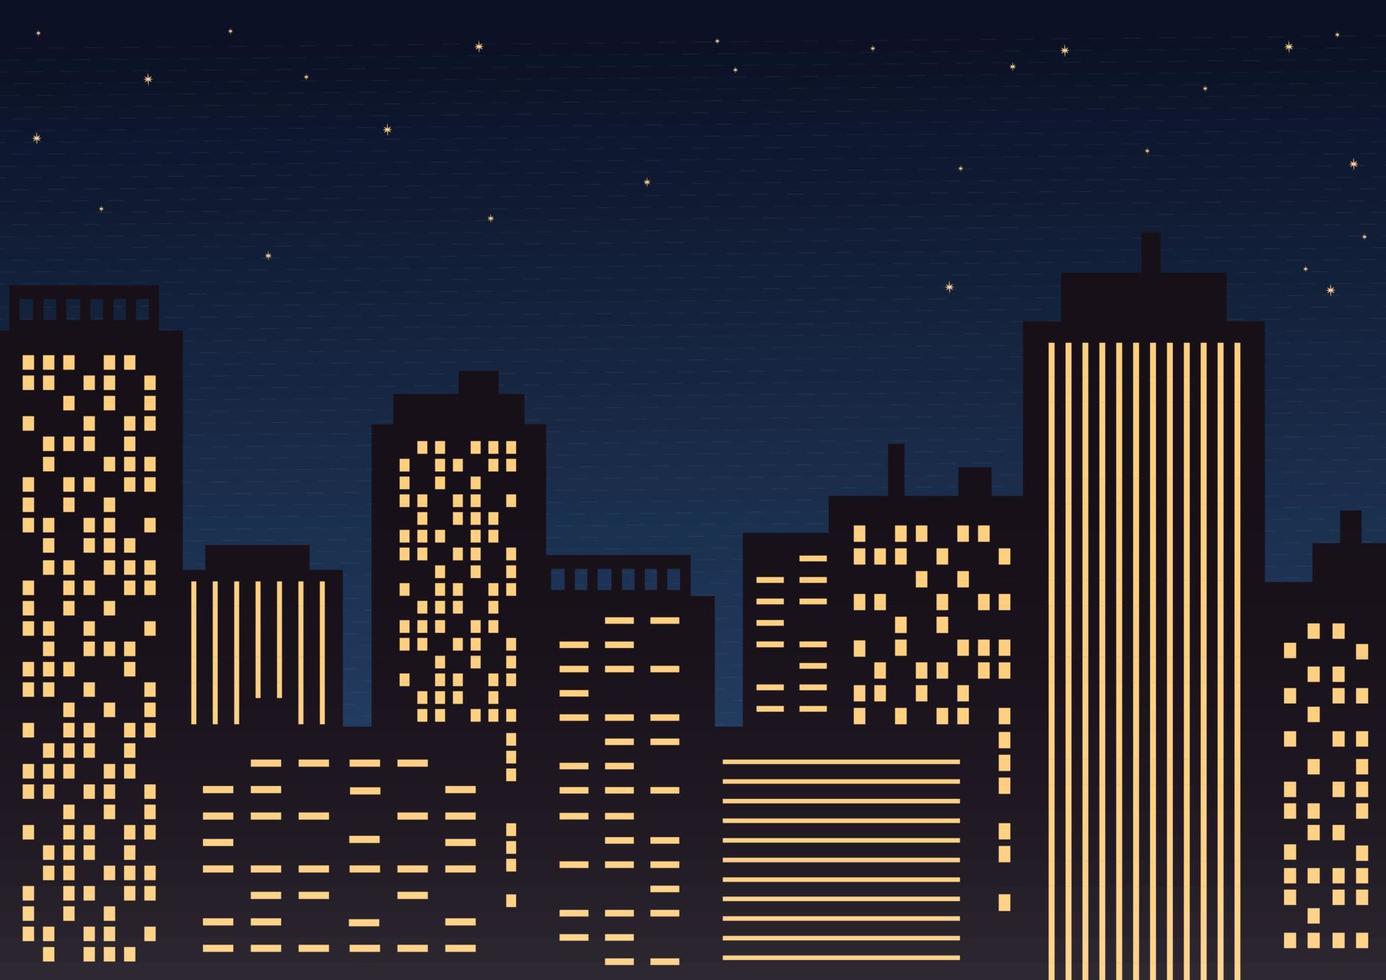 panorama noturno da cidade. edifícios com janelas luminosas contra o céu estrelado. ilustração em vetor plana.